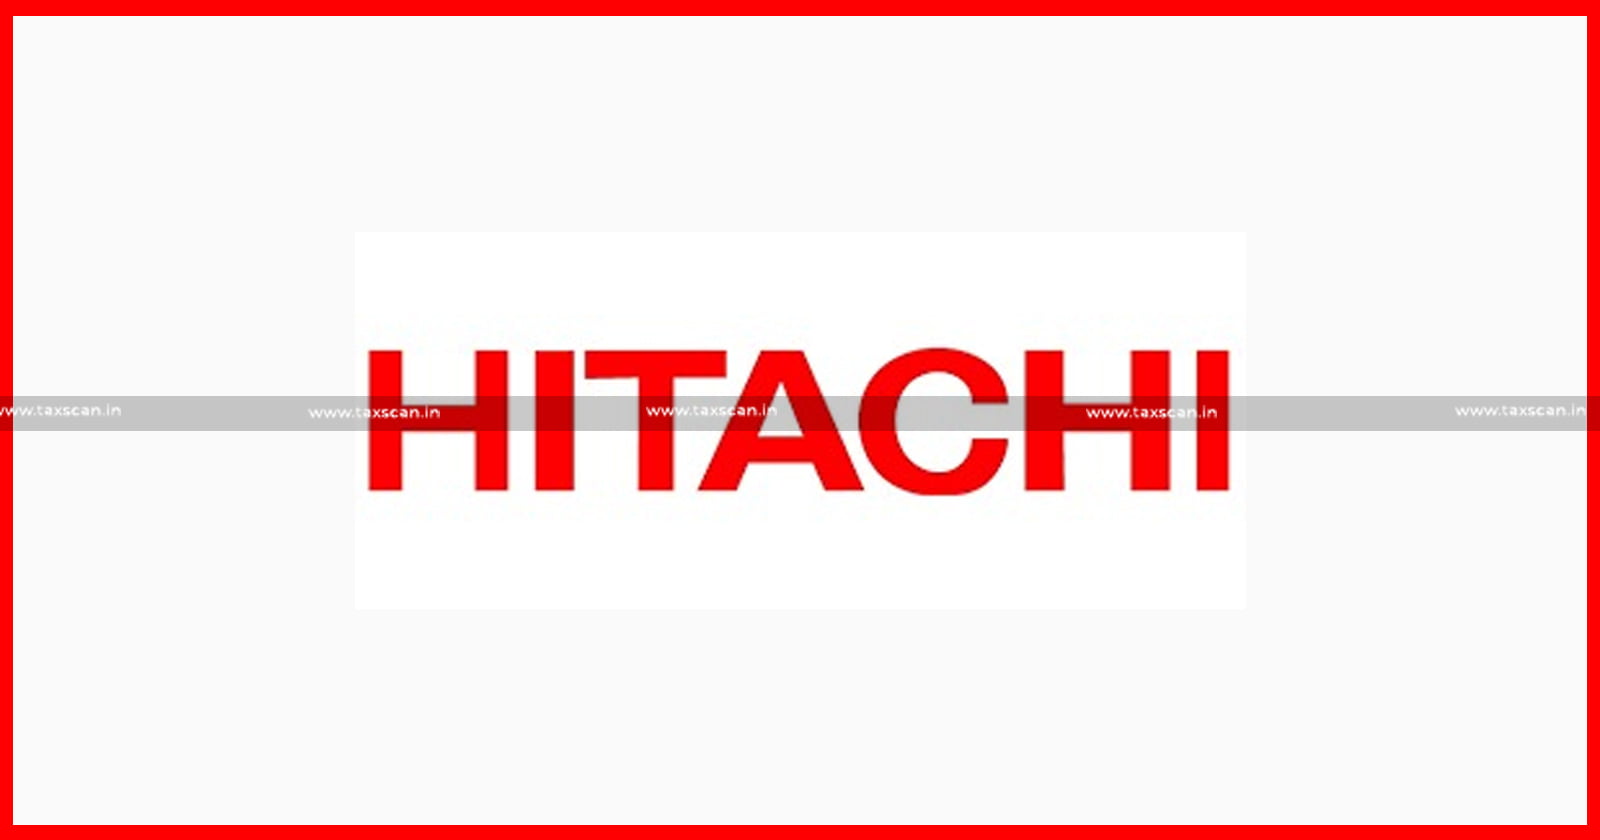 CA Vacancy in Hitachi - CA Vacancy - Hitachi - Vacancy in Hitachi - CA Vacancies - CA - Jobscan - Taxscan